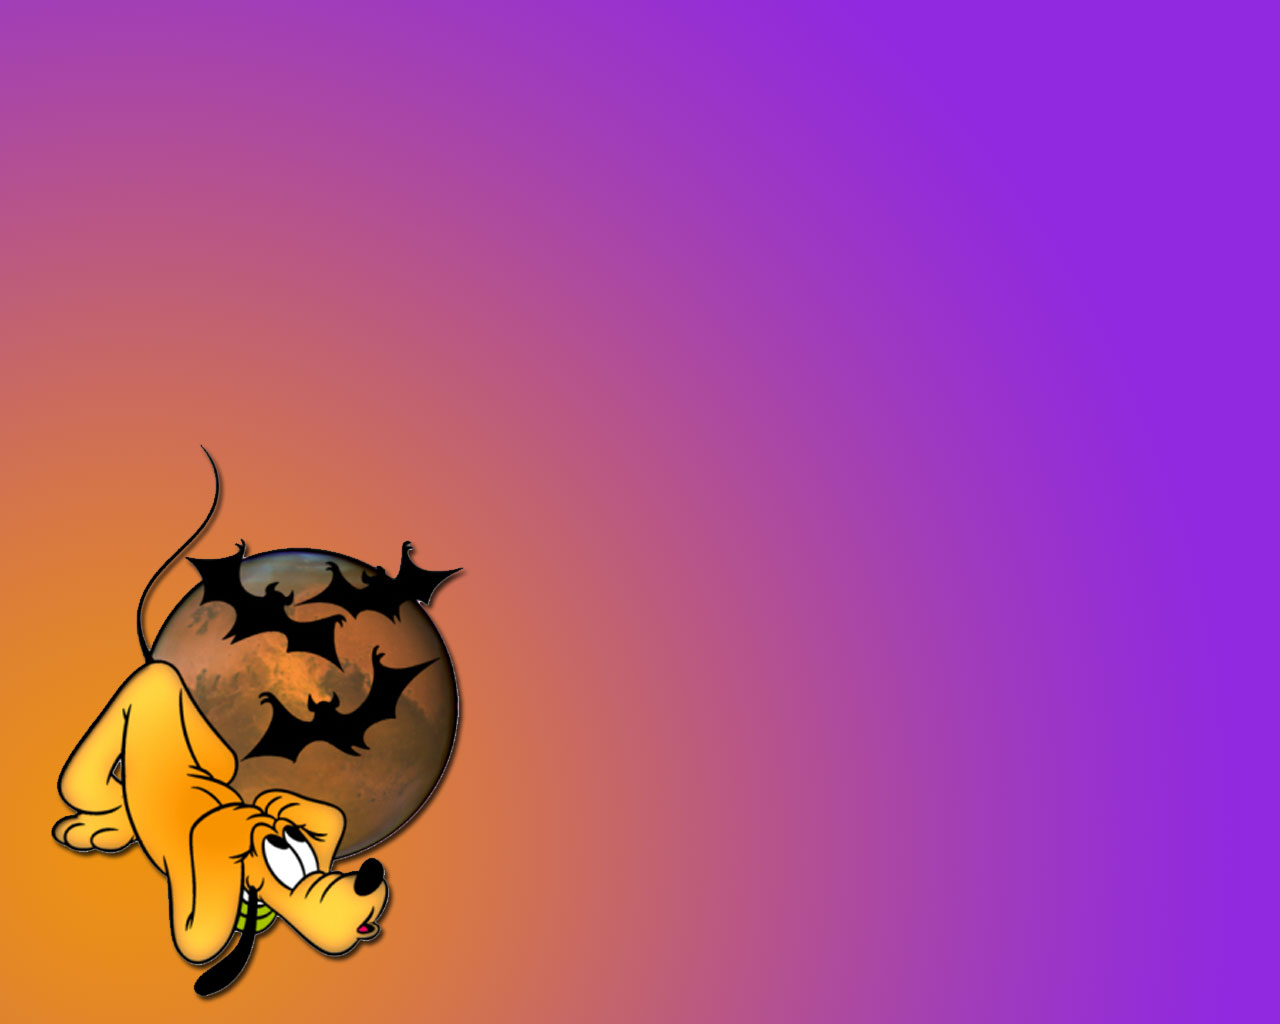 Disney Halloween Hd For Desktop Backgrounds - Disney Pluto Halloween - HD Wallpaper 